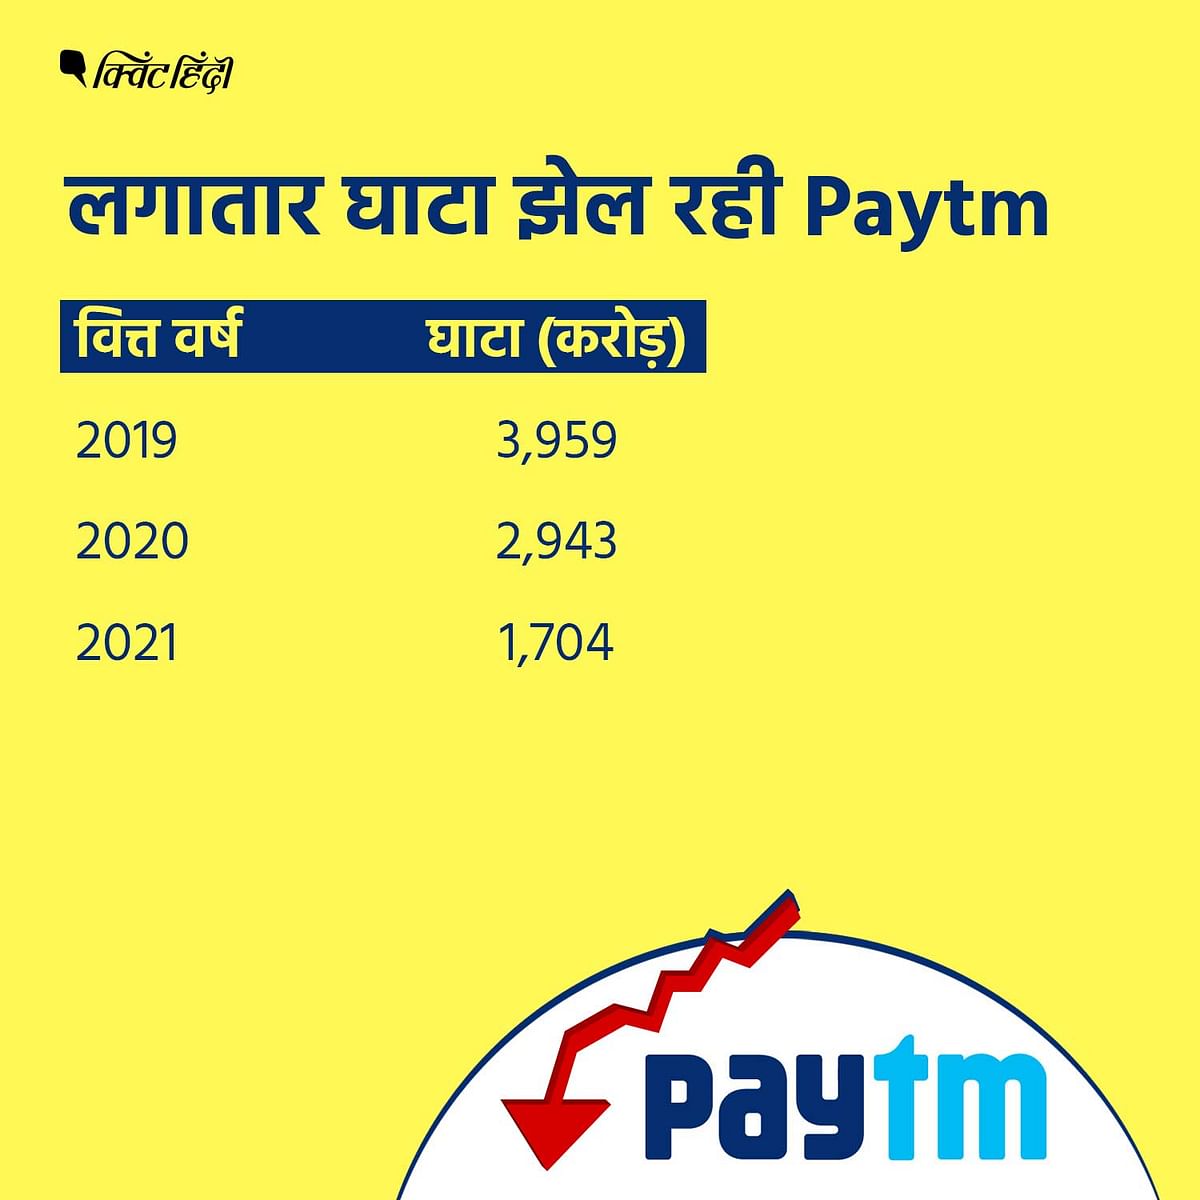 Paytm का शेयर 2,150 रुपए से गिरकर 589 रुपए पर आ गया है.